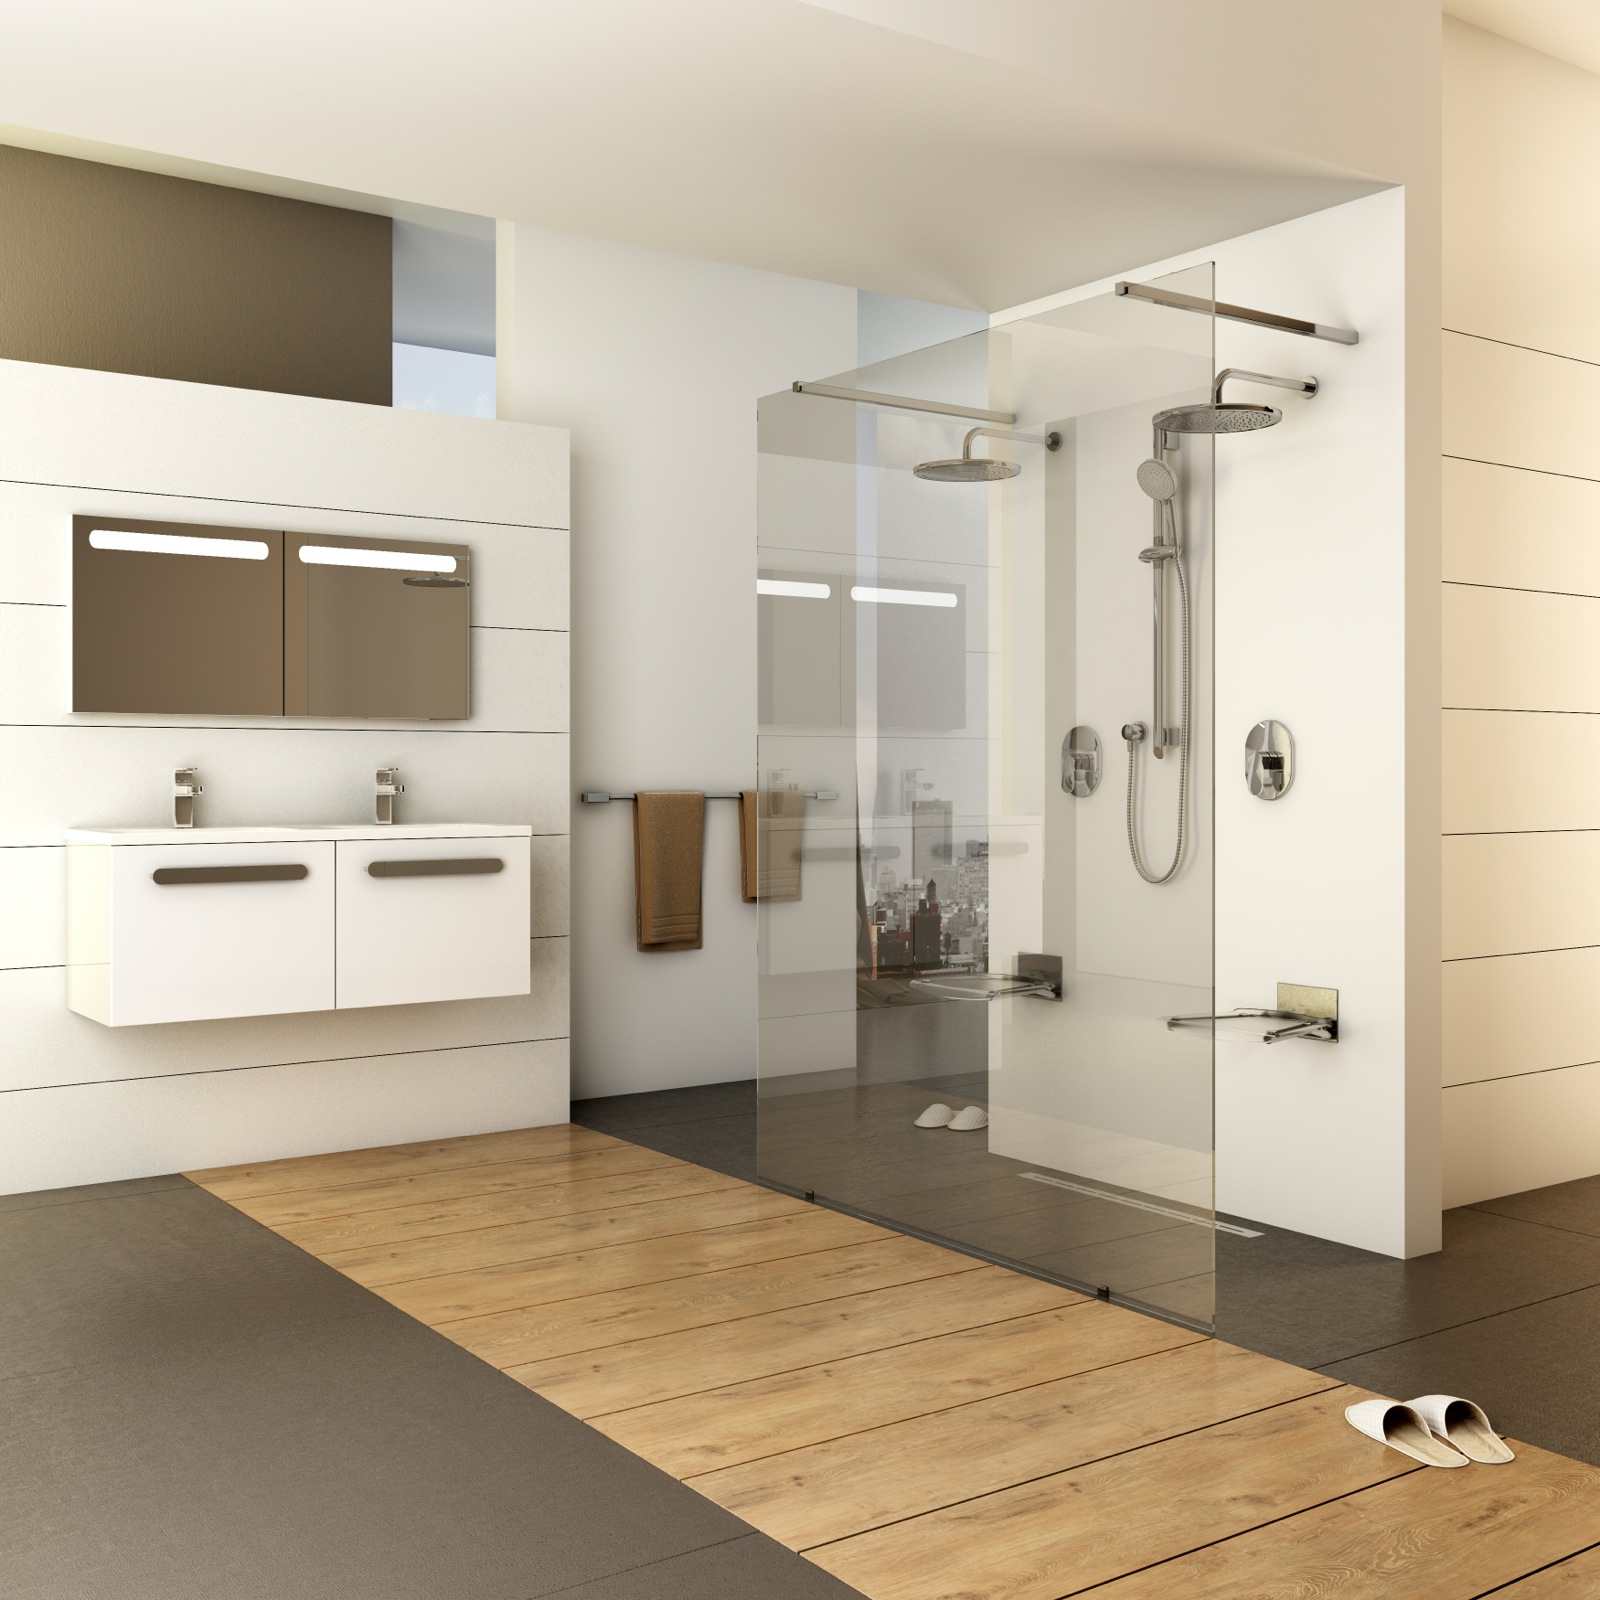 Az üvegfalak kombinálásával alakítható, tágas, így páros fürdőzésre is alkalmas Walk-In zuhanykabinok pikáns, átlátszó szaniterek.